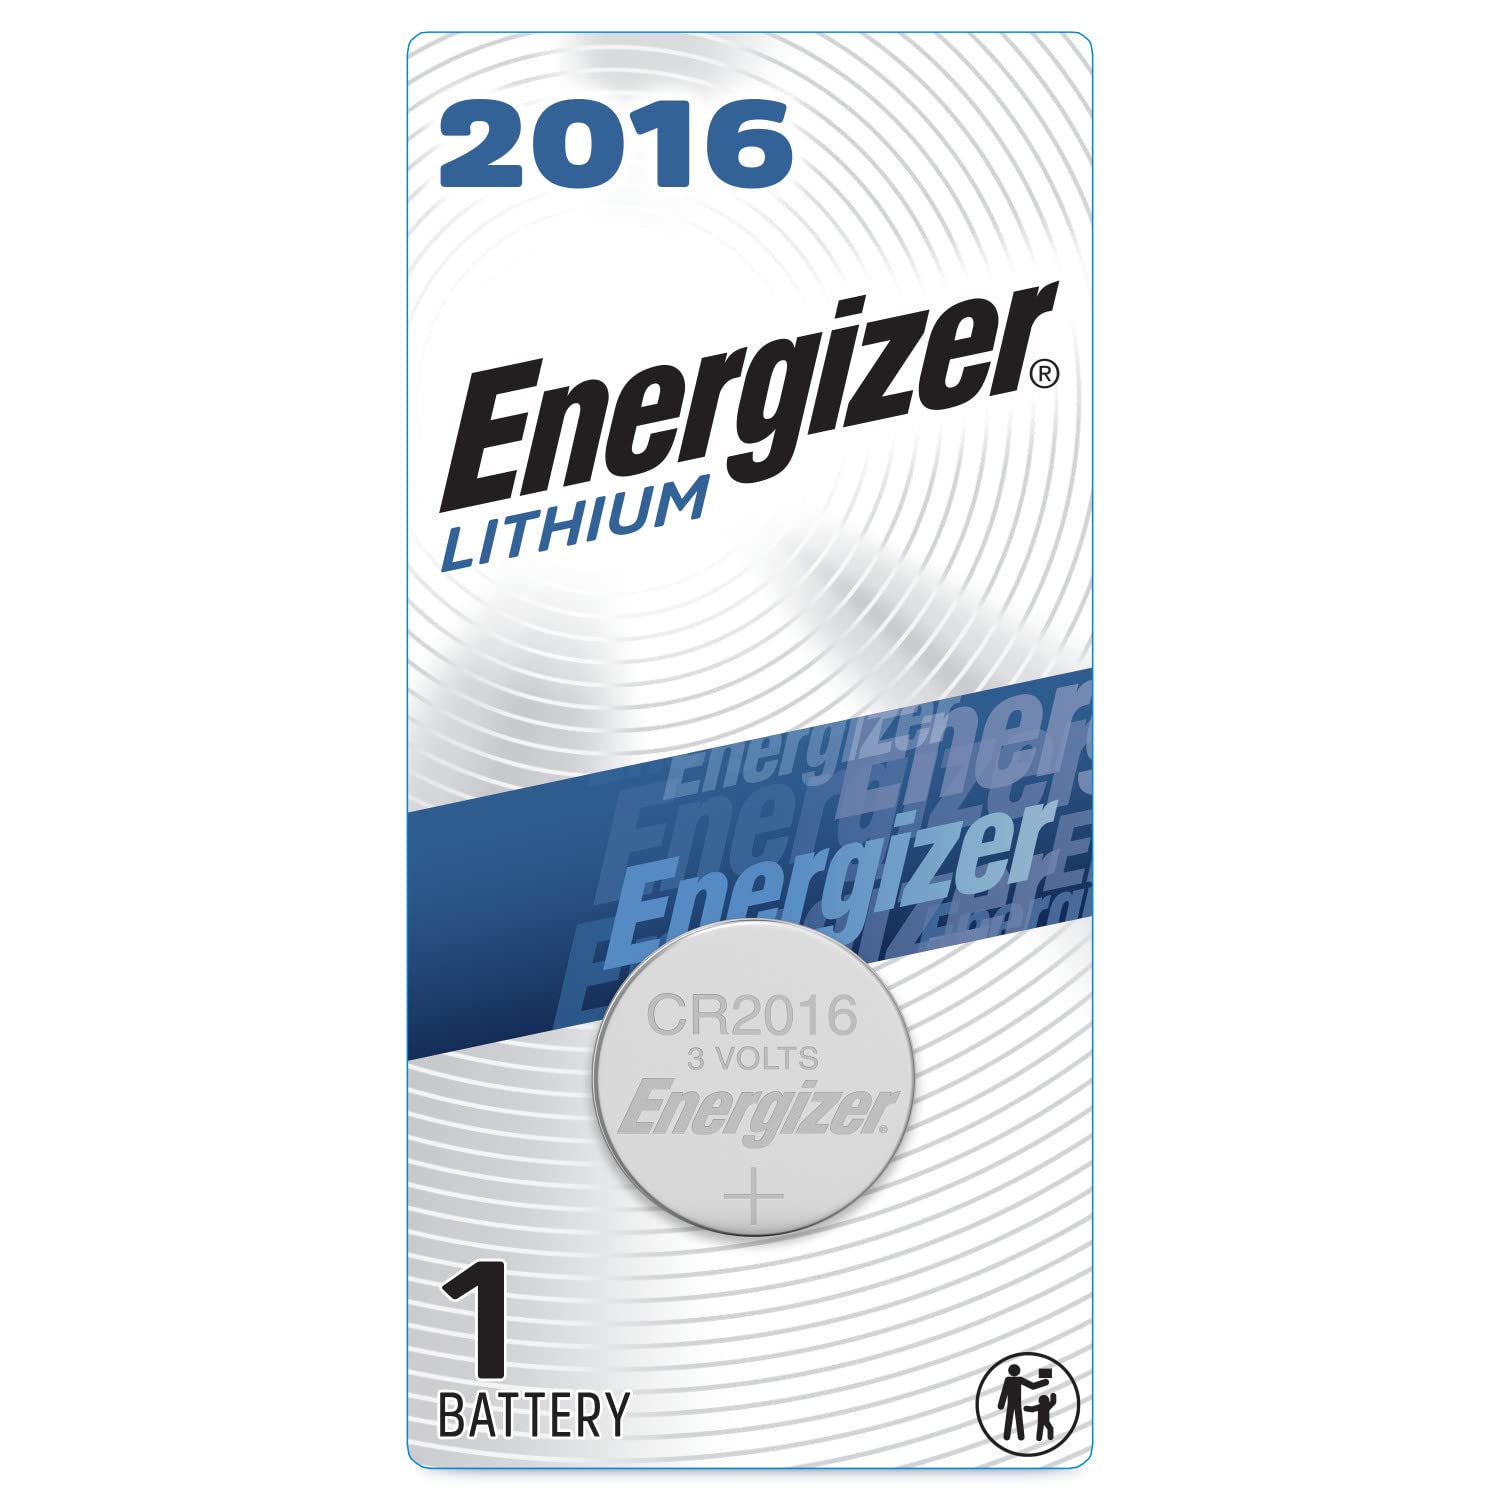 Energizer 1616 3V Batteries, 3 Volt Battery Lithium, 1 Count